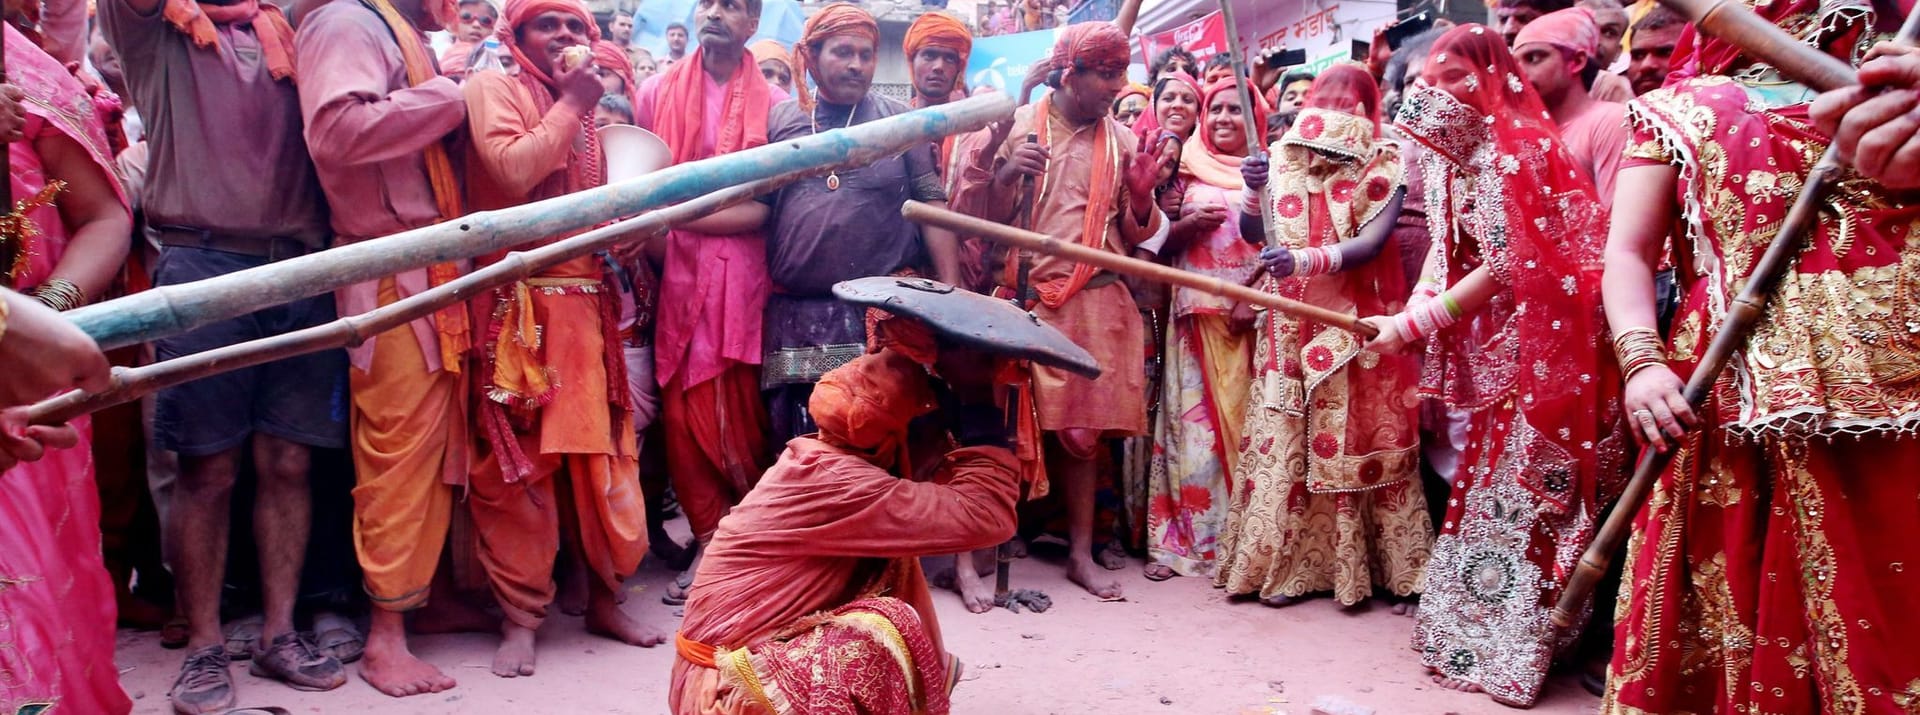 Brauch in Neu Delhi: Indische Frauen schlagen Männer mit Stöcken während des Lathmar-Holi-Fests in Barsana.